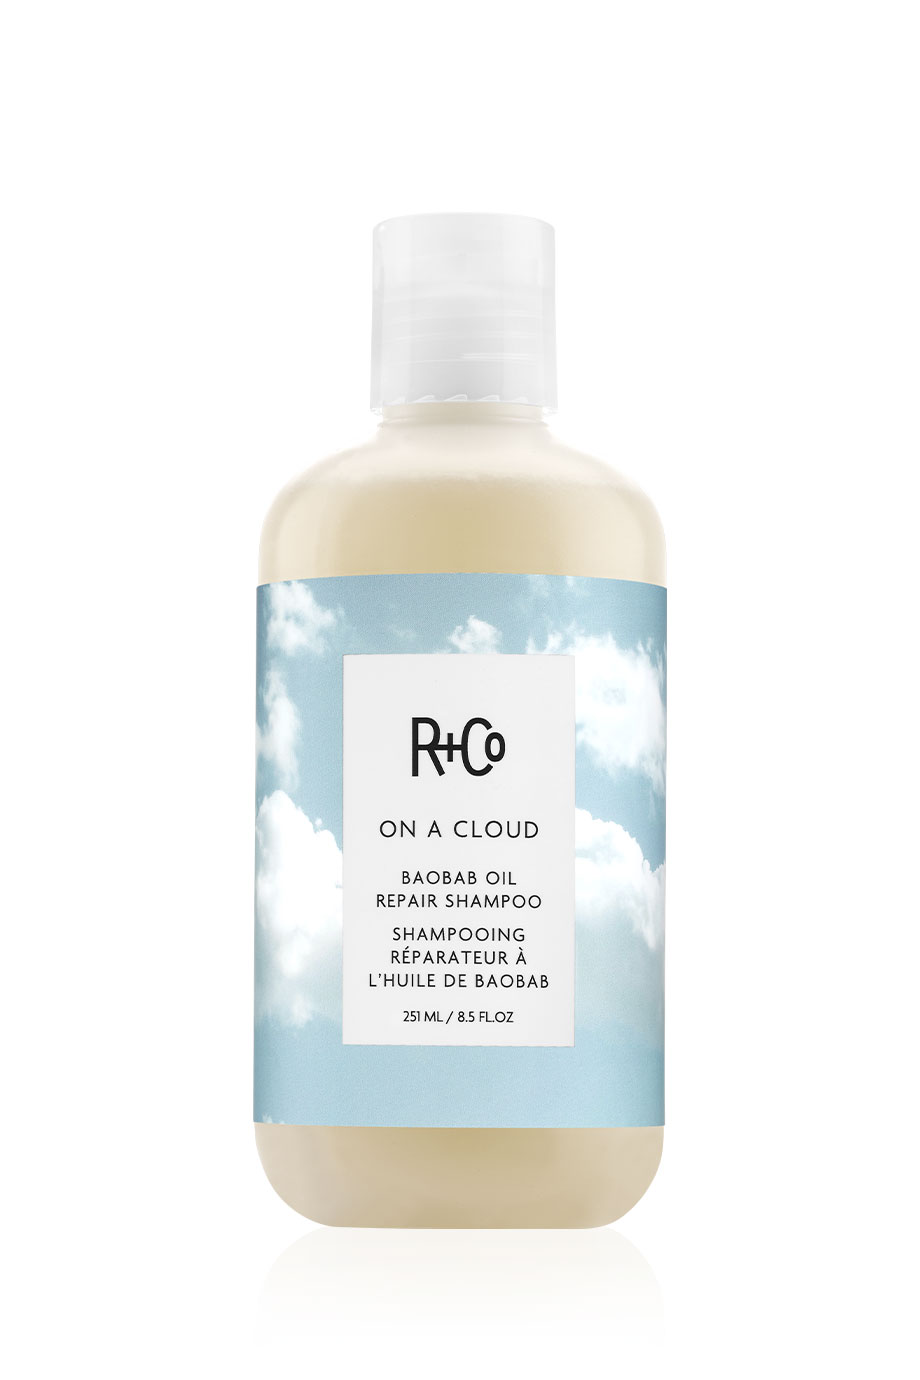 R+Co On A Cloud Baobab Oil Repair Shampoo 251ml - интернет-магазин профессиональной косметики Spadream, изображение 40189